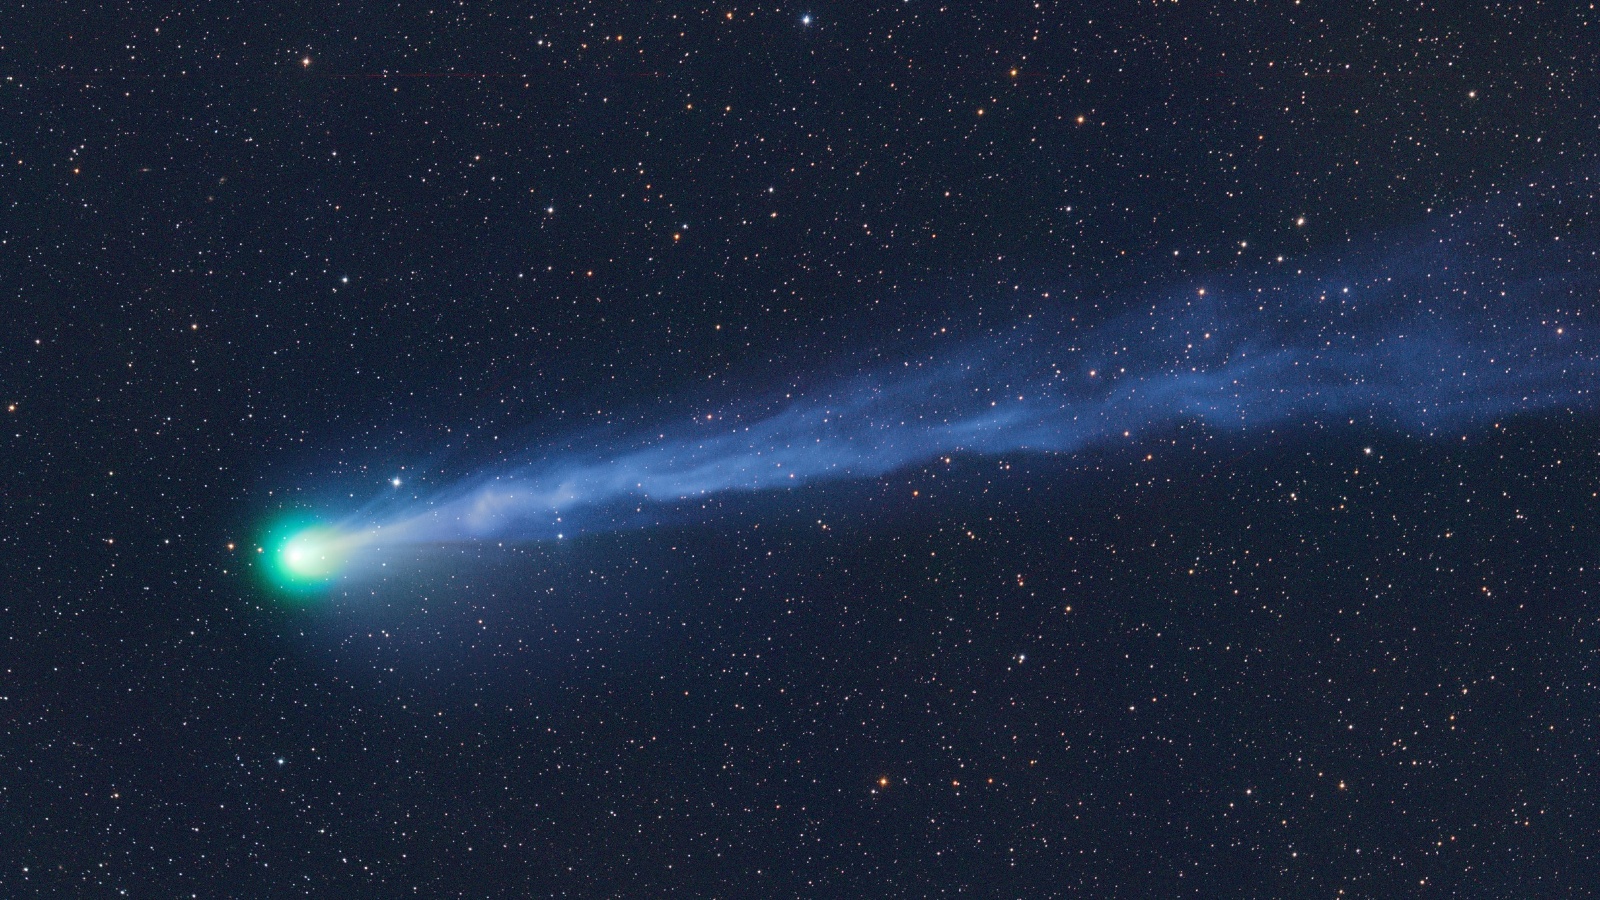 L’esplosiva “cometa del diavolo” 12P sarà presto al suo massimo splendore.  Ecco come vederlo prima che scompaia.